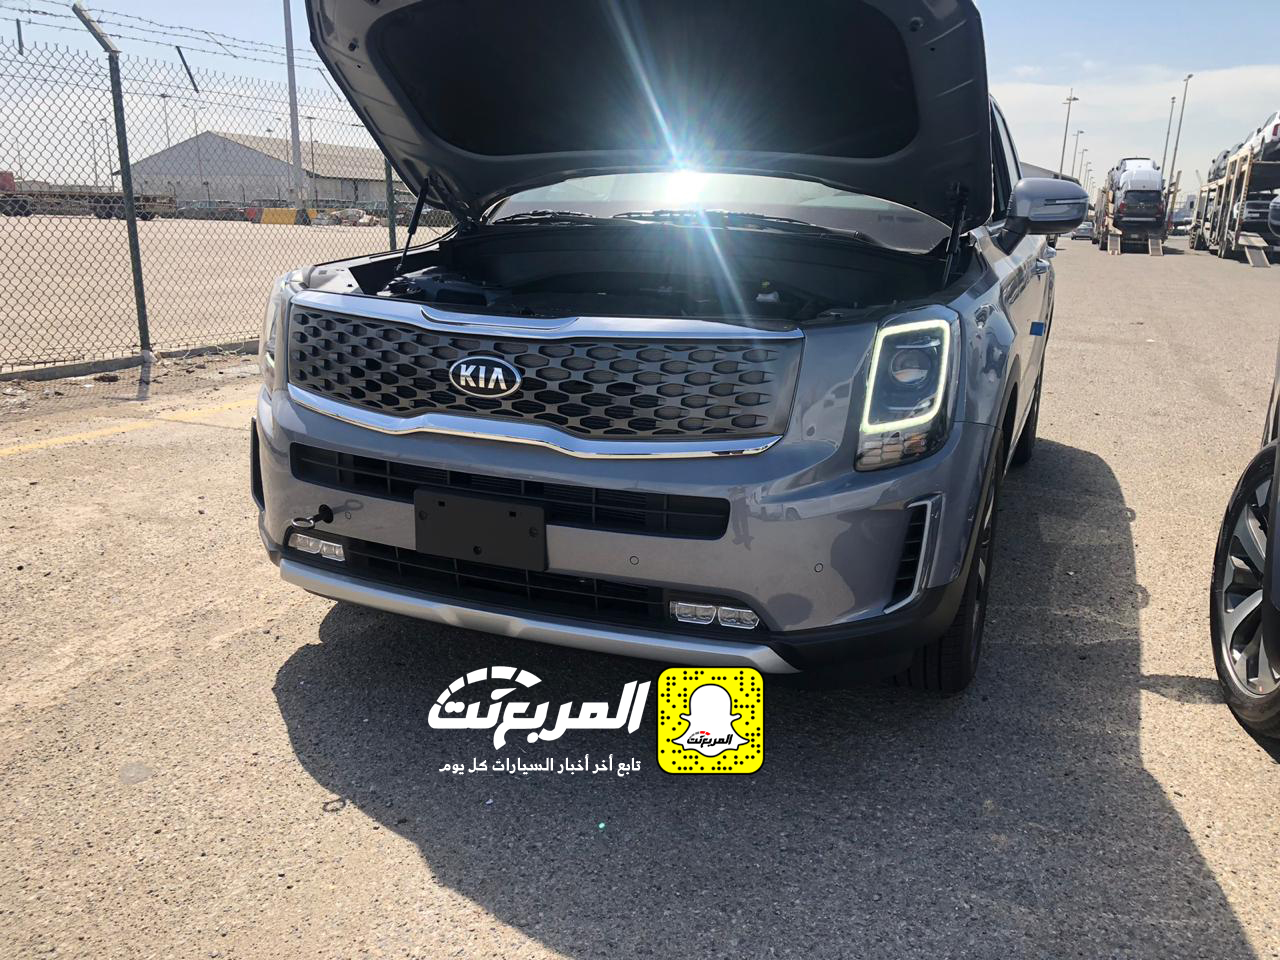 "بالصور" وصول كيا تيلورايد 2020 الجديدة الى السعودية اكبر SUV من كيا + موعد البيع الرسمي 23